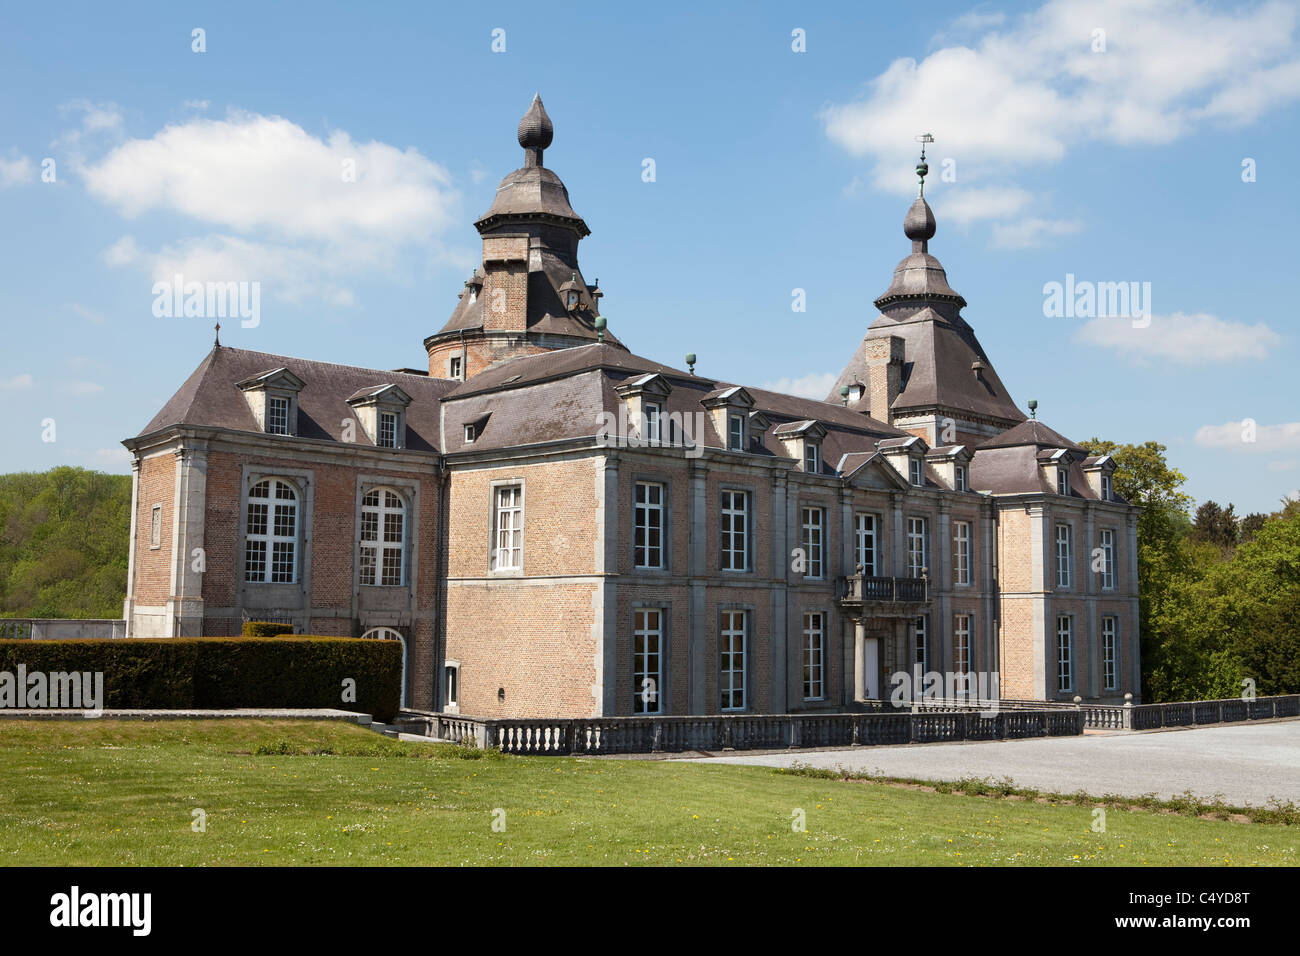 Château de Modave château, Modave, province de Liège, Belgique, Europe Banque D'Images